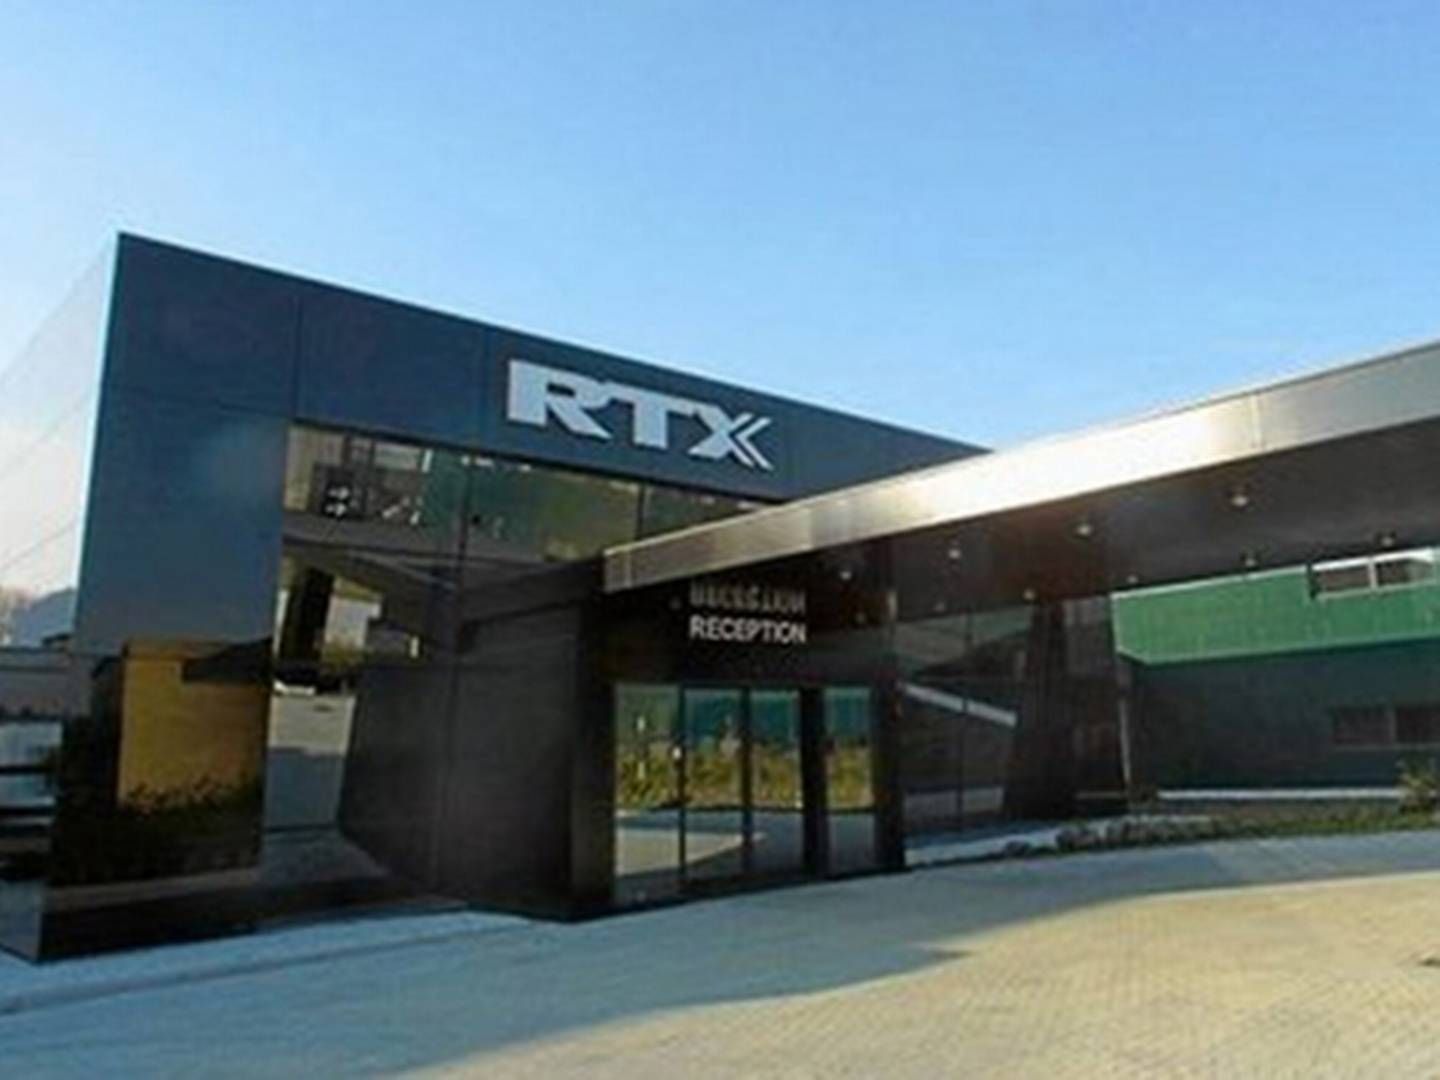 RTX indgår samarbejde med global spiller på healthcare-markedet. | Foto: Rtx/pr